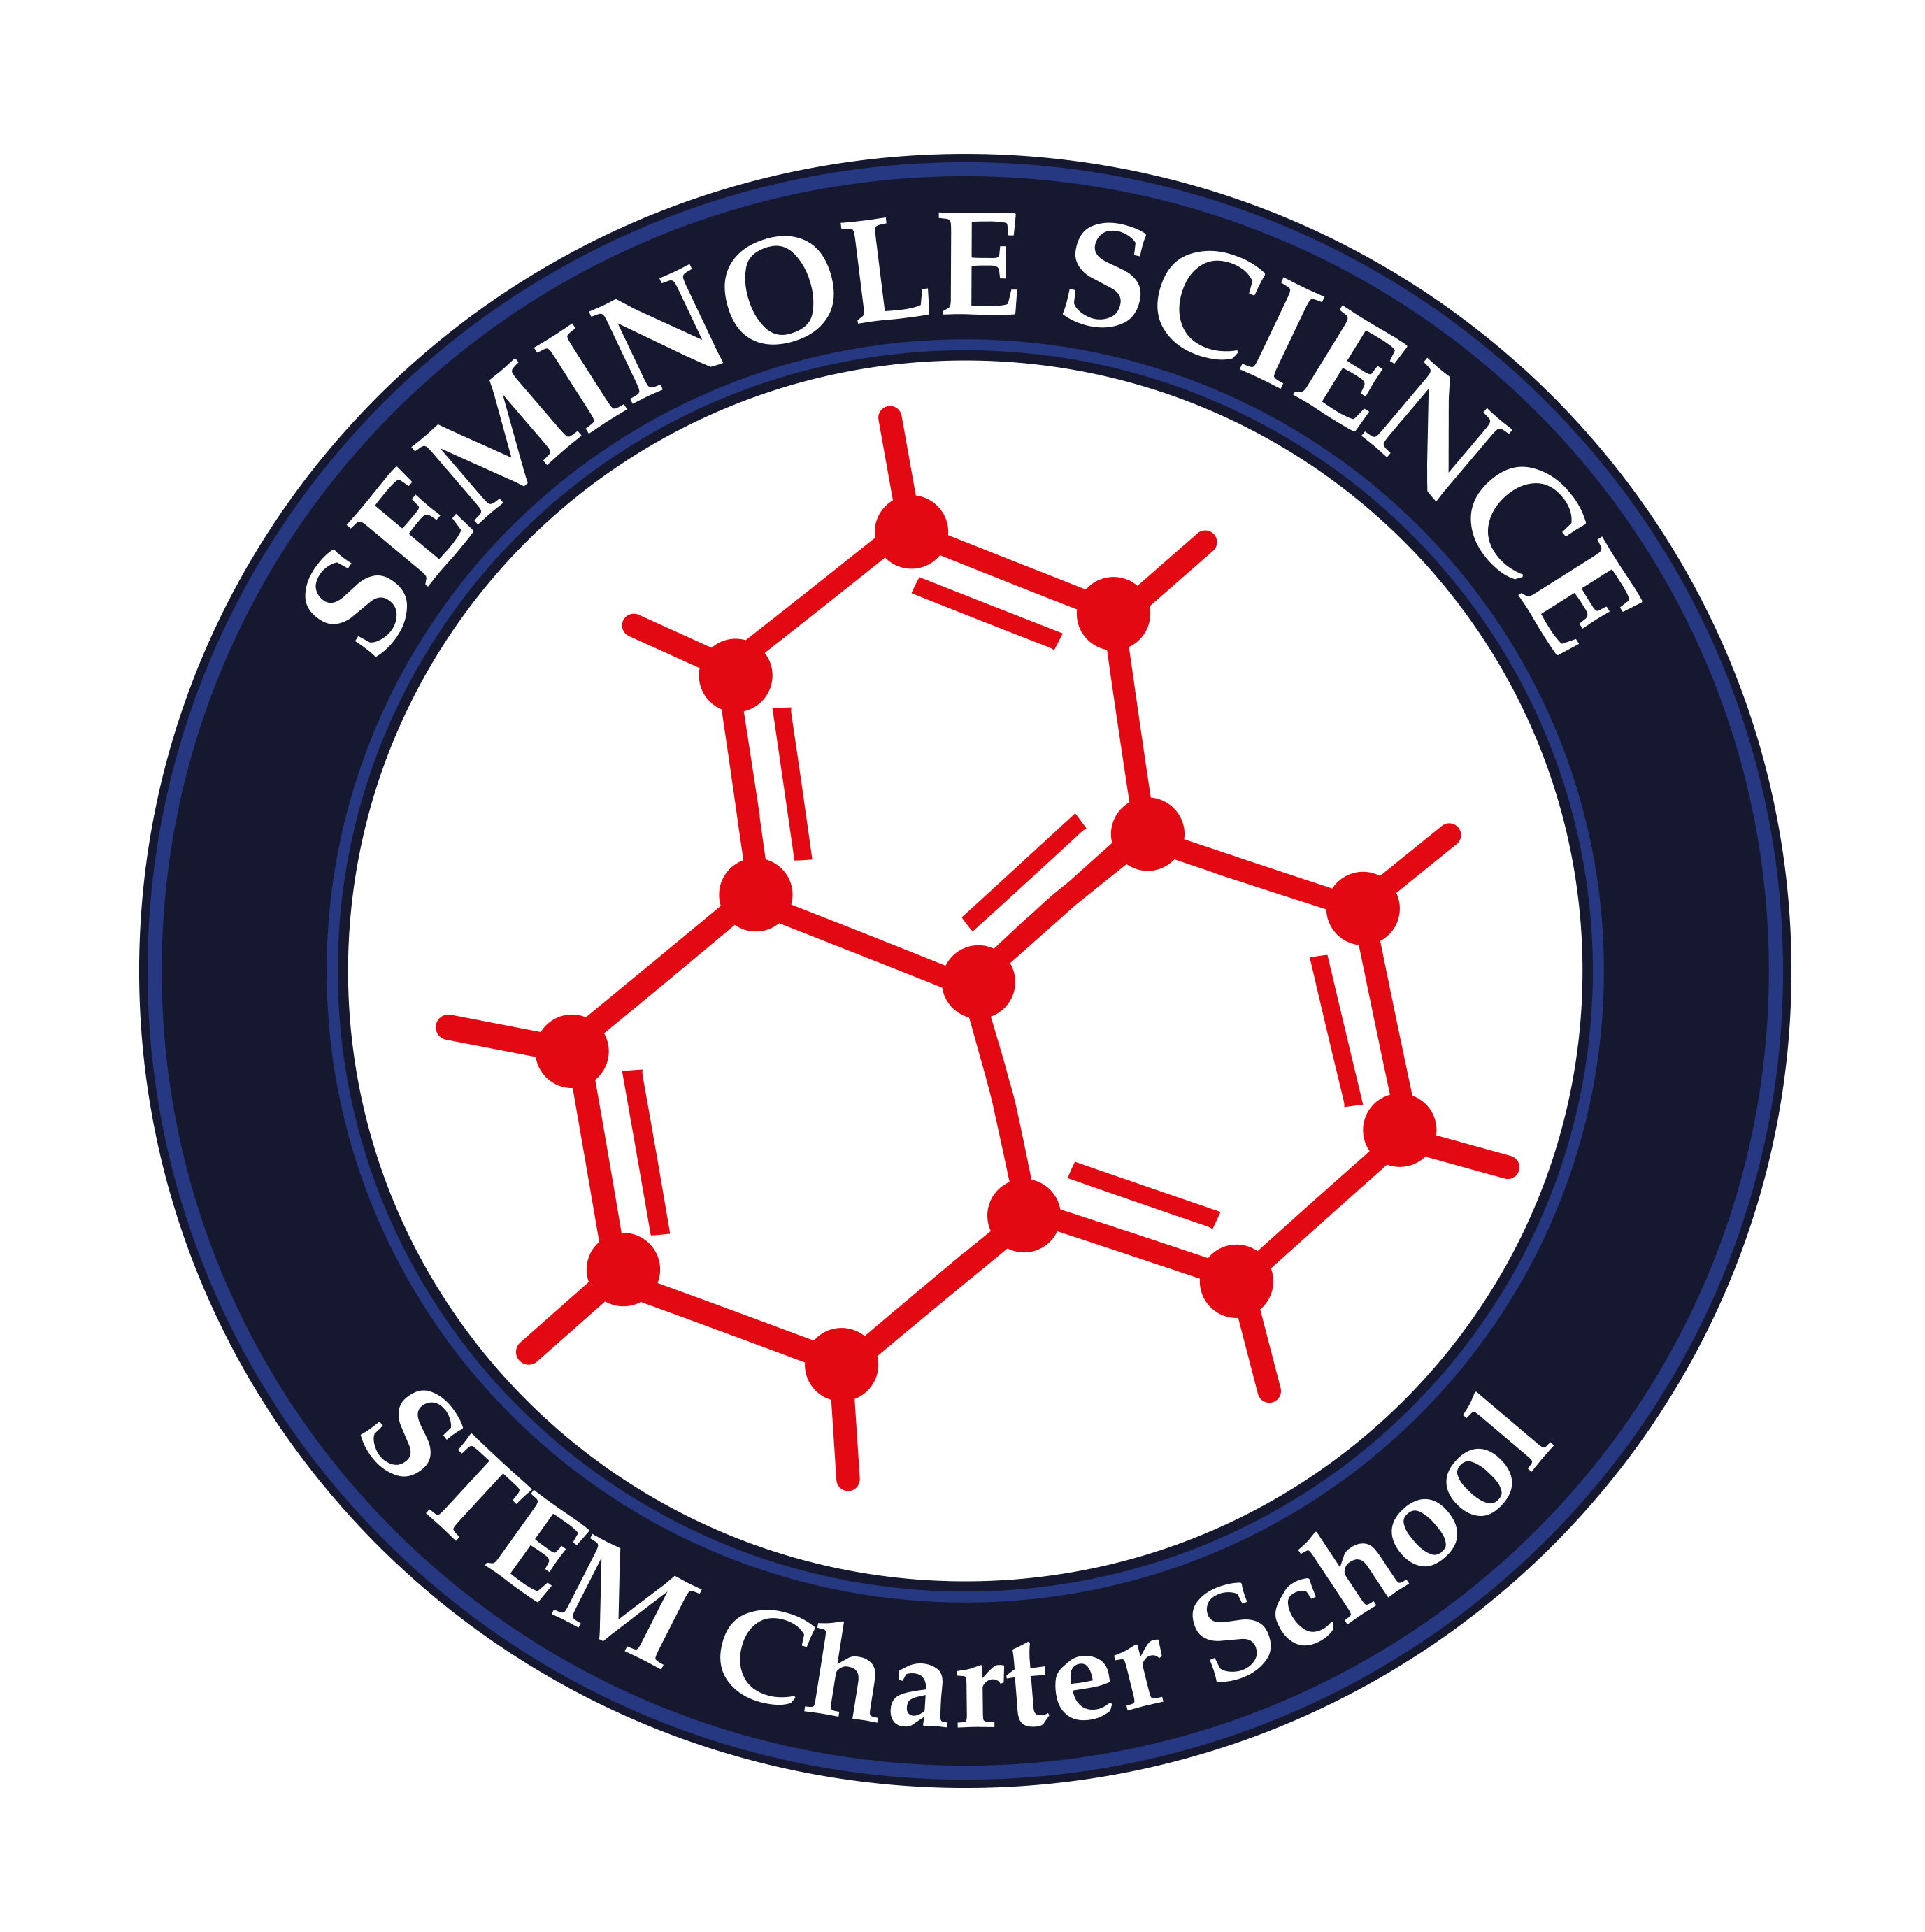 Seminole science